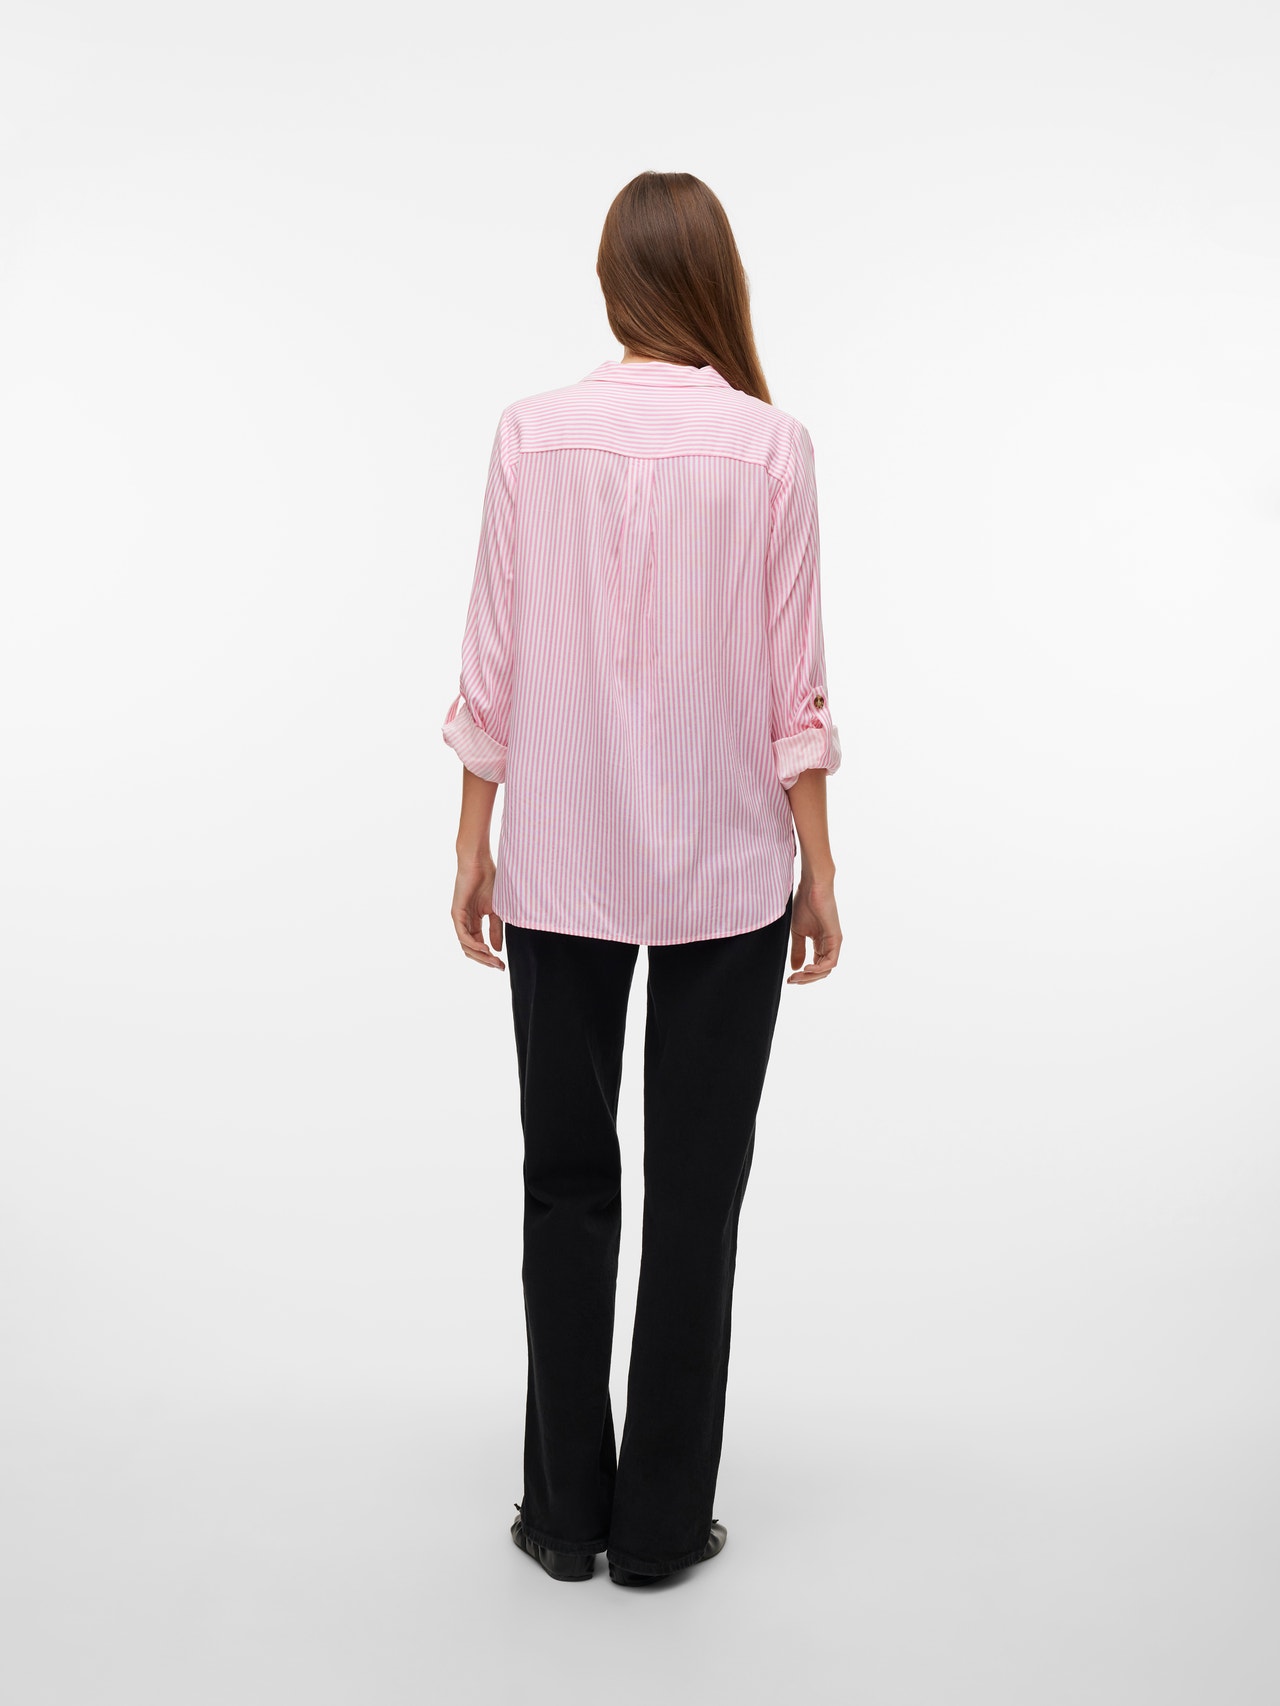 Vero Moda VMBUMPY Camisas -Pink Cosmos - 10275283